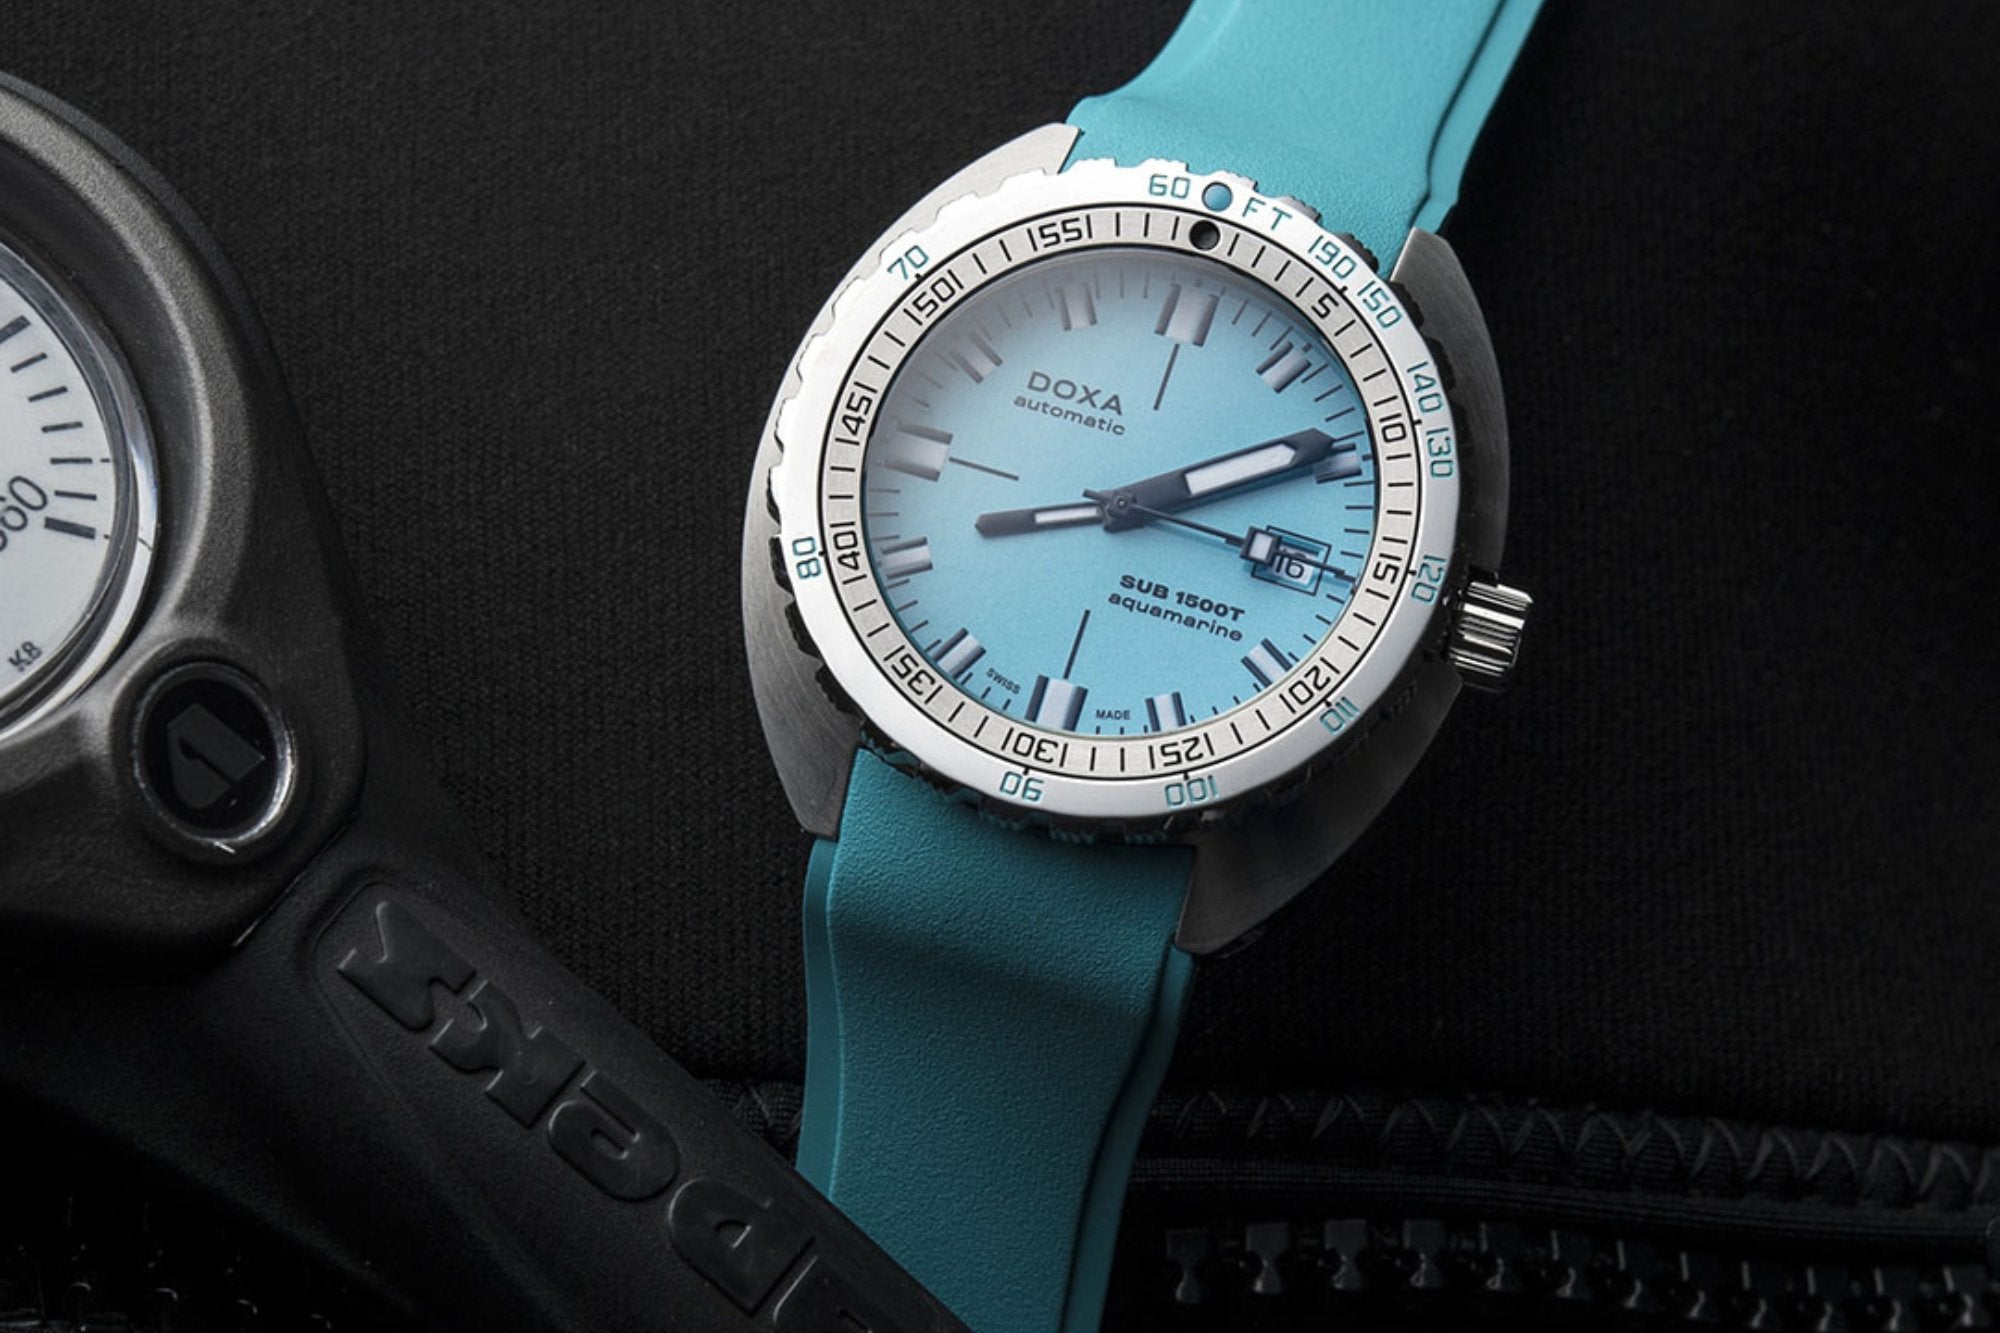 SUB 1500T | DOXA Watches